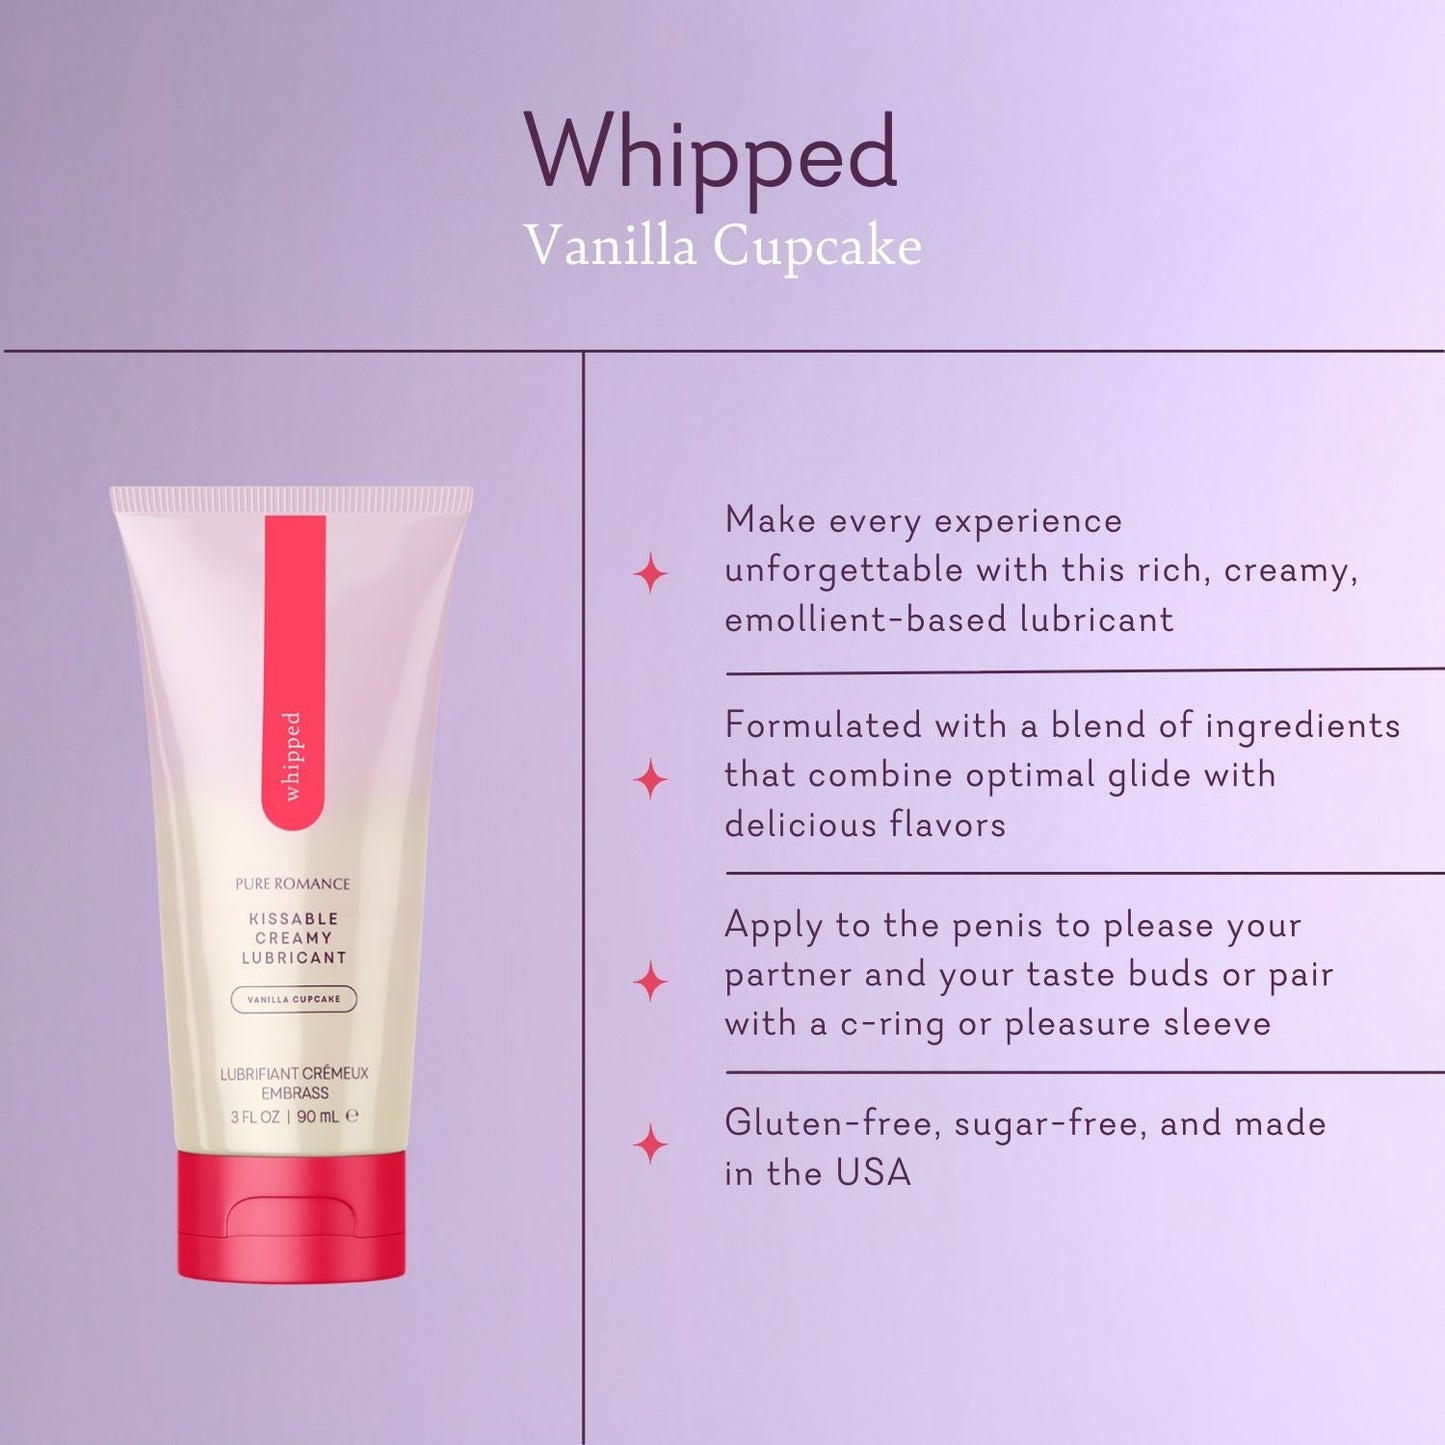 Whipped - Vanilla Cupcake